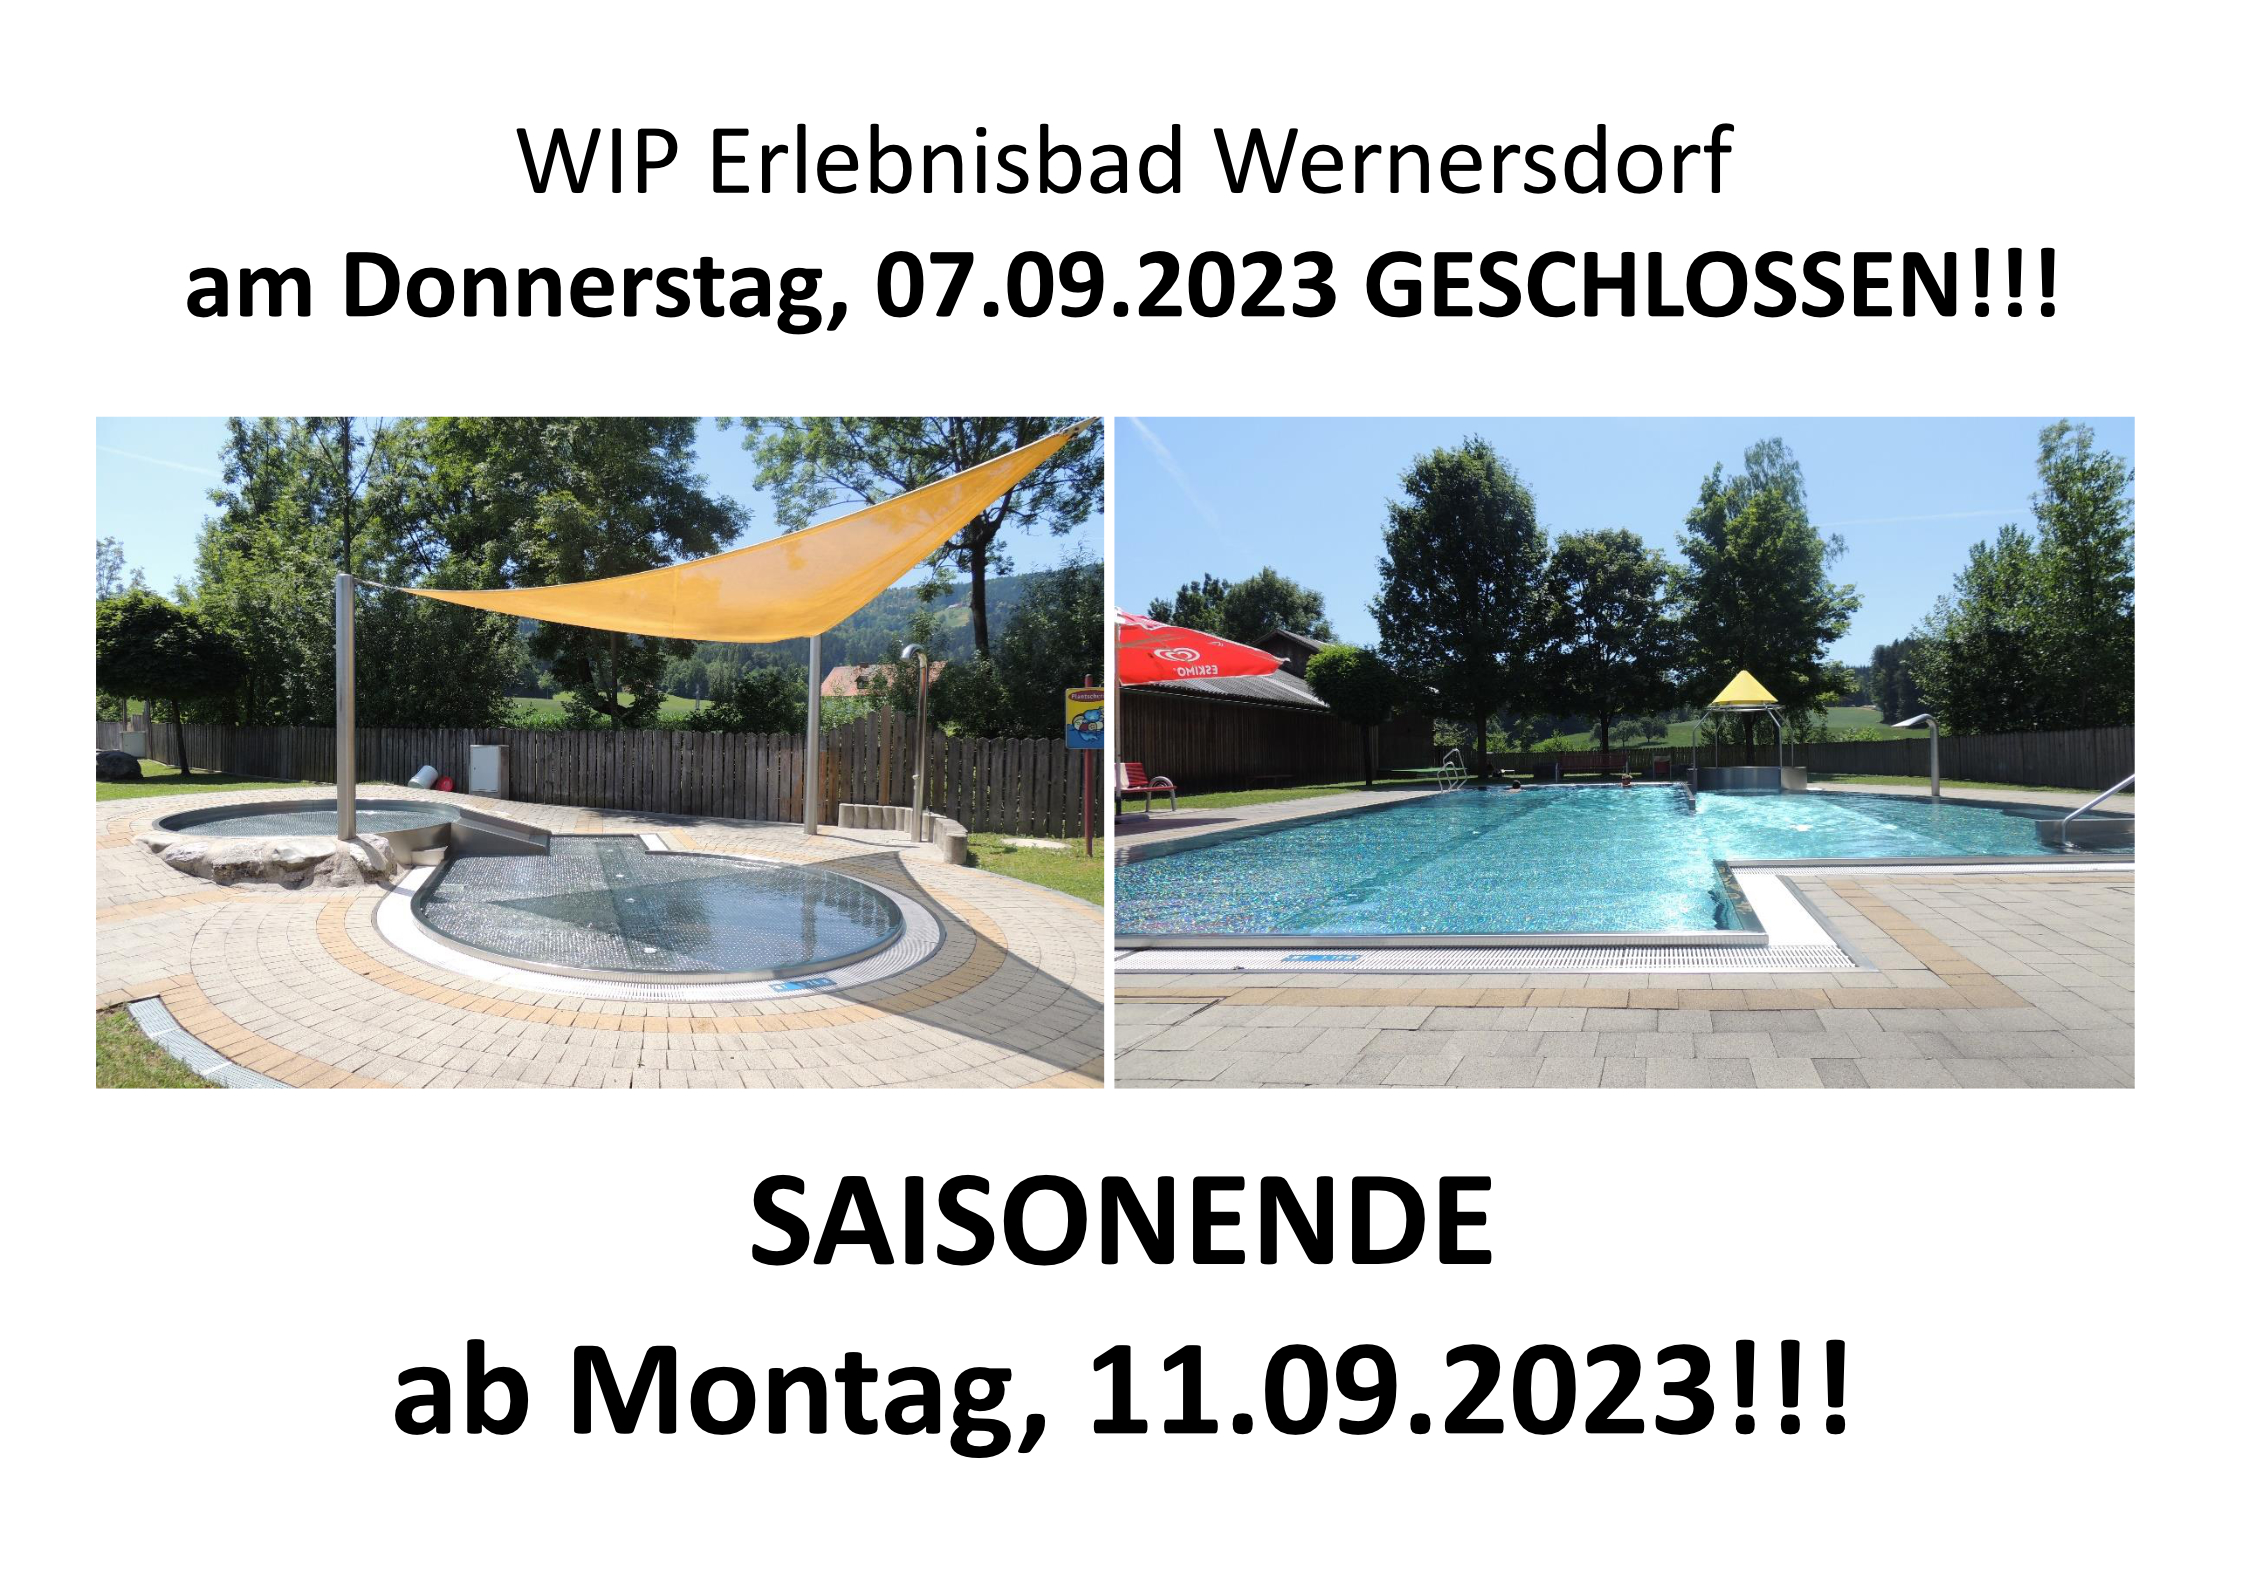 WIP Erlebnisbad Wernersdorf 07.09.2023 geschlossen und Saisonende ab 11.09.2023